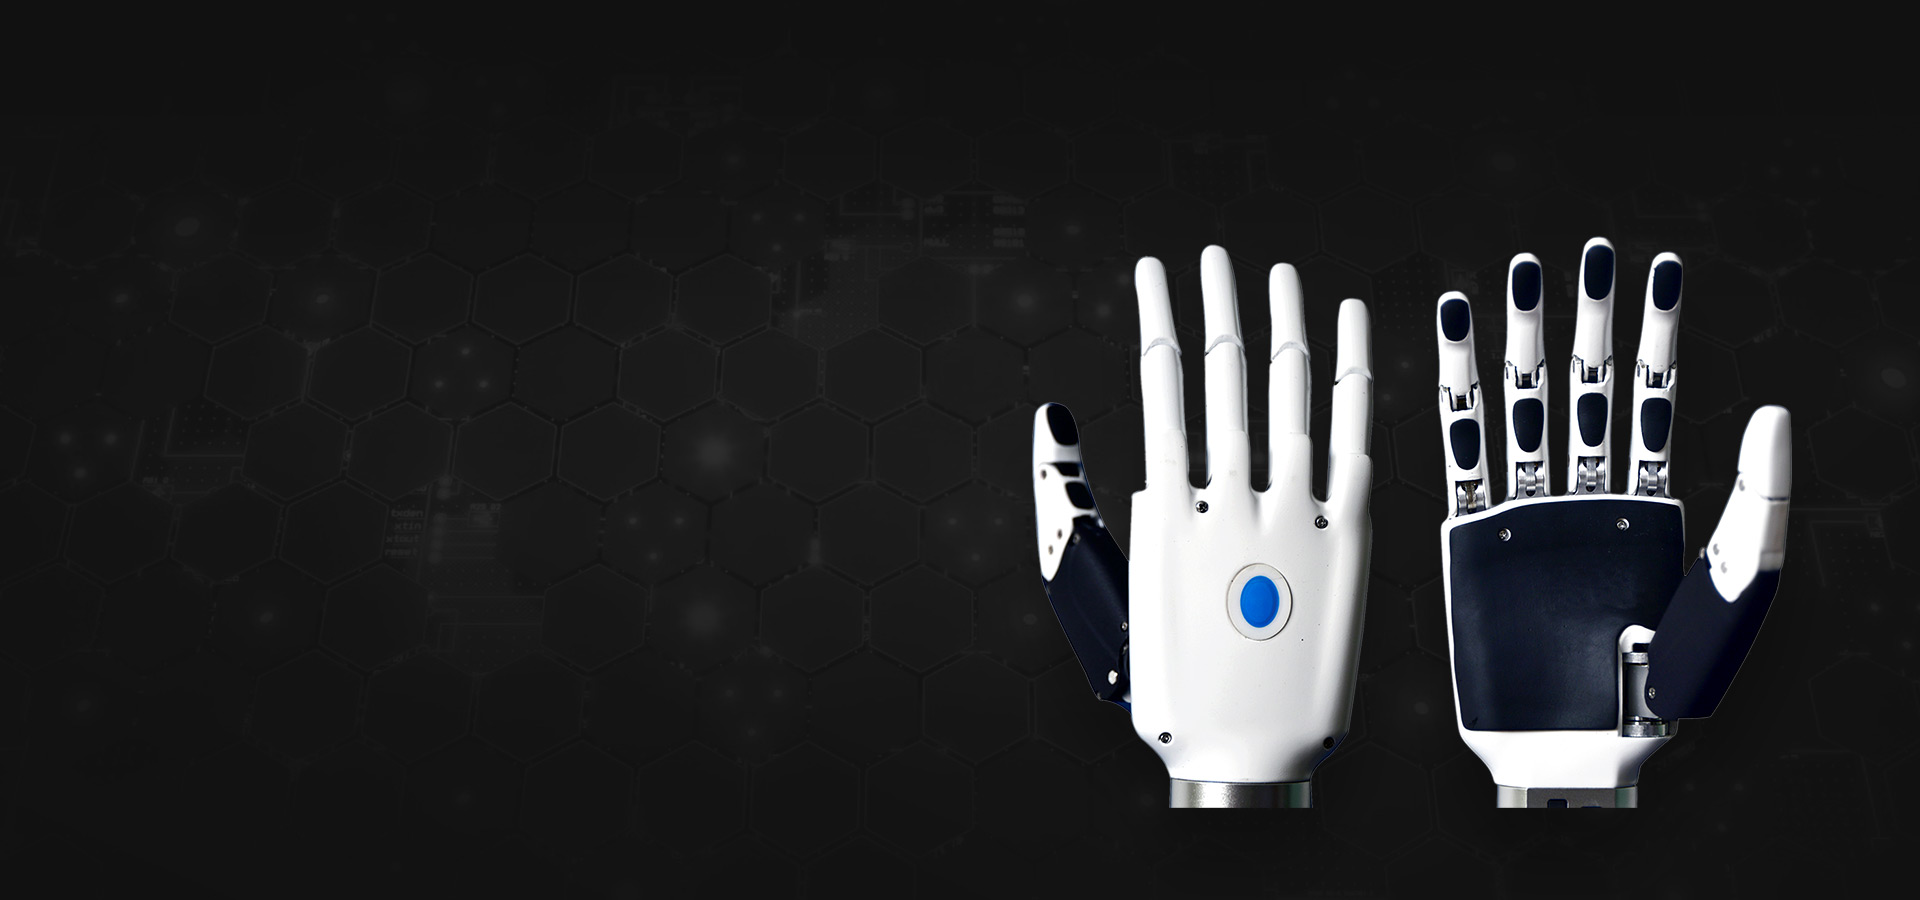 每个手指单独驱动，动作灵活精准；手指关节弹力缓冲装置，手感舒适，防碰撞；掌部和手指表面的耐磨材料具有防滑功能，抓握可靠；采用航空材料，重量轻，牢固美观；每个手指驱动集成压力、位置、速度等传感器及反馈控制；拇指具有3个自由度；多模式控制，蓝牙4.0连接。